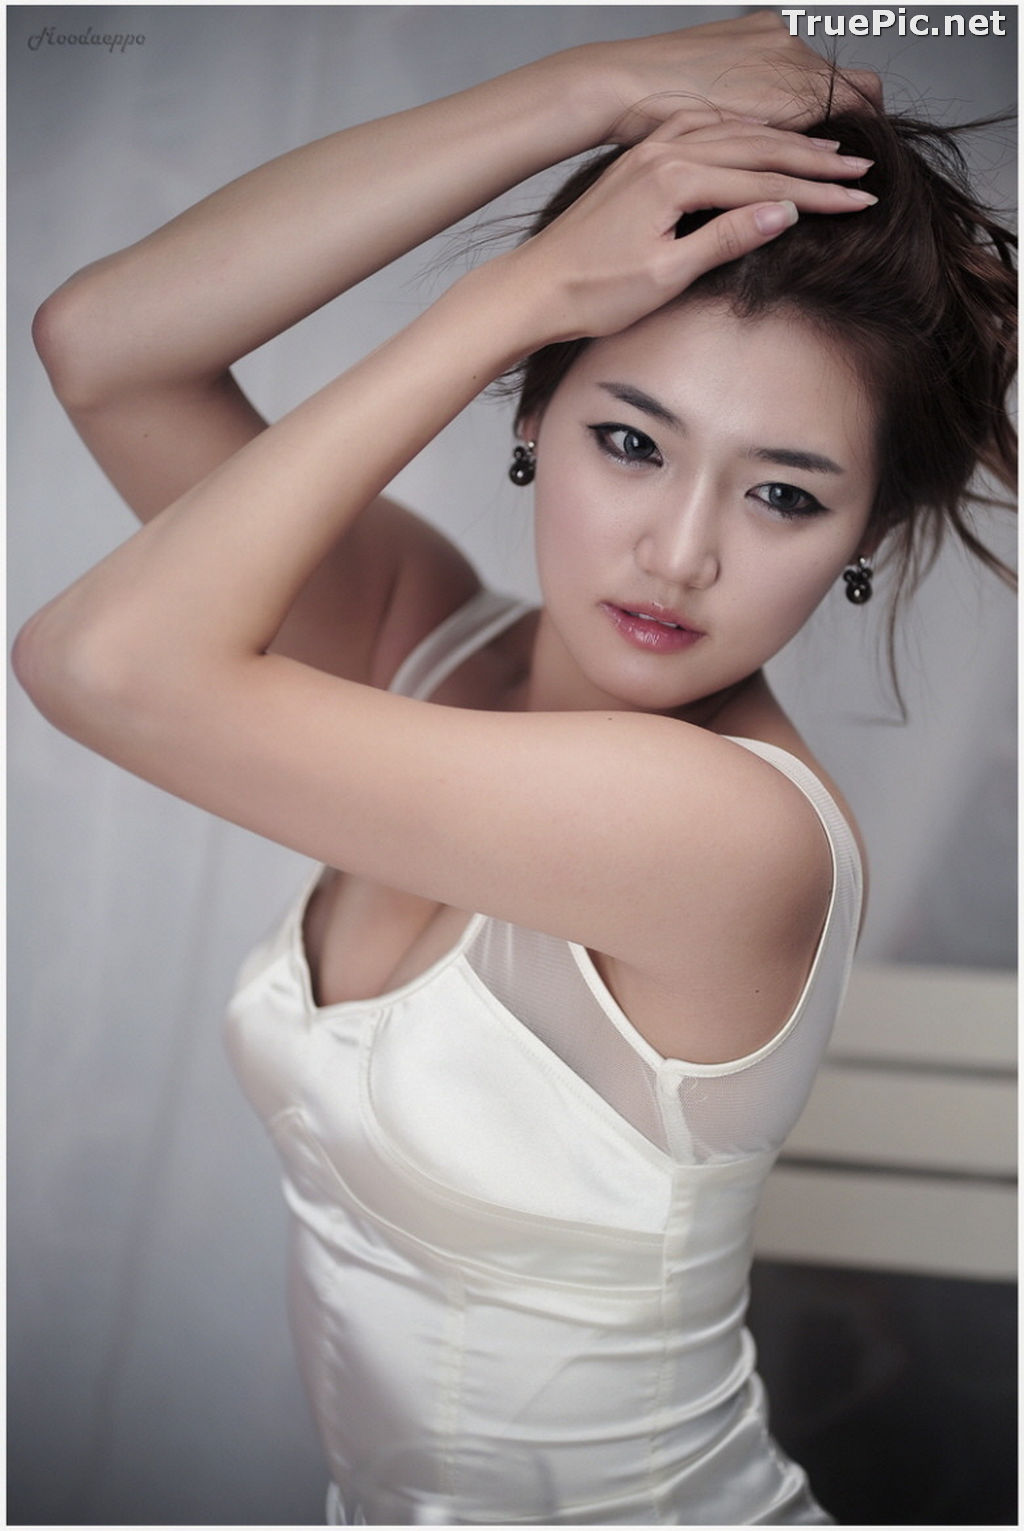 Image Best Beautiful Images Of Korean Racing Queen Han Ga Eun #3 - TruePic.net - Picture-89